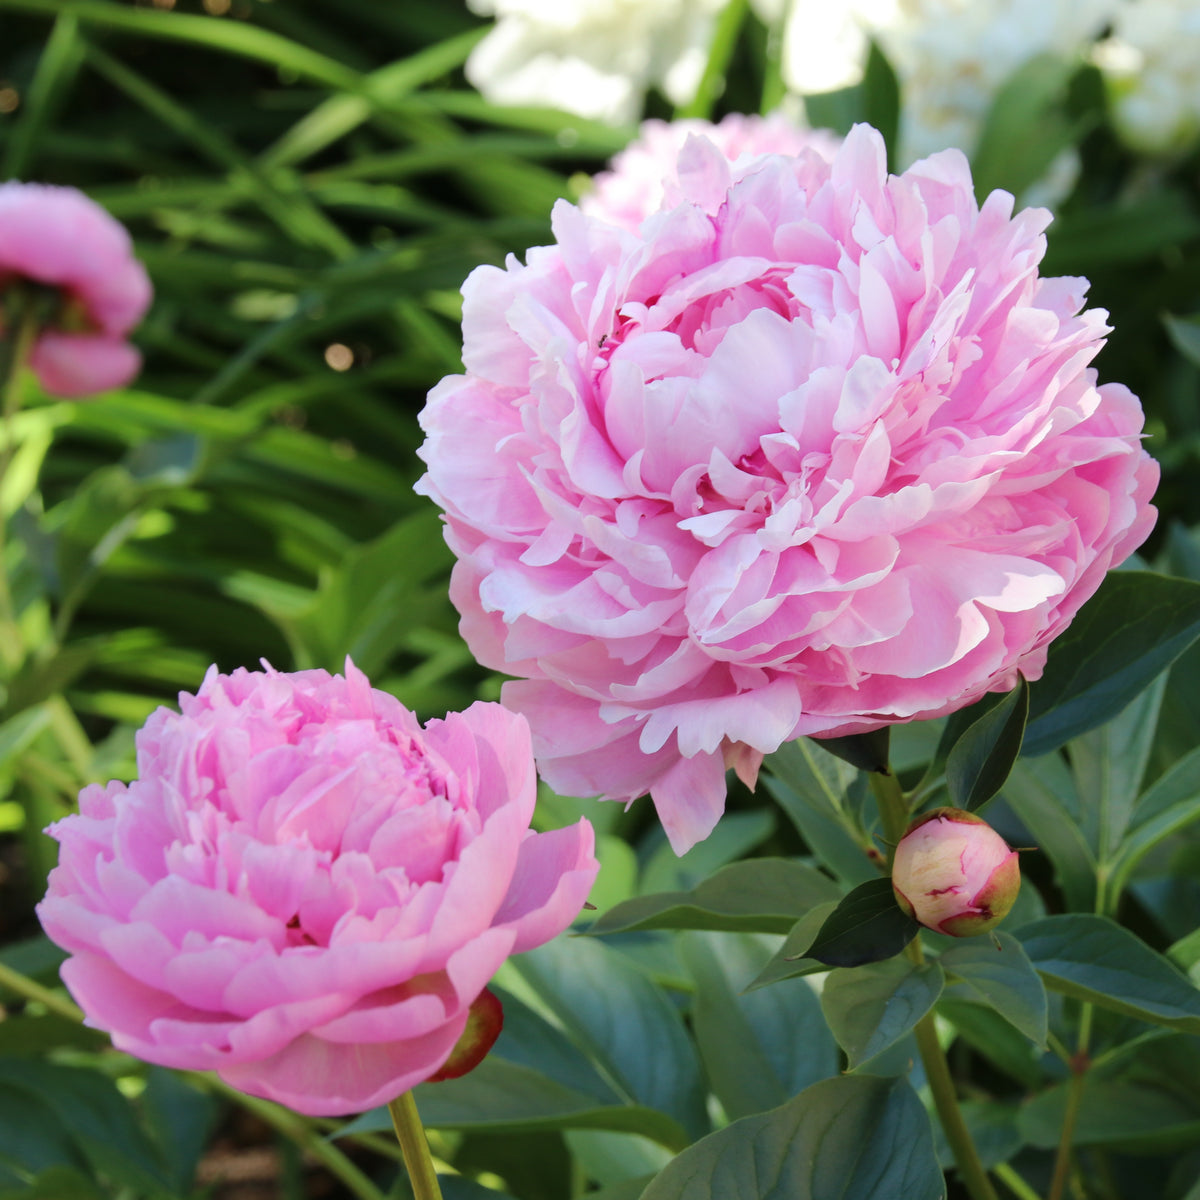 Pivoine Paeonia 'Sarah Bernhardt' - Biologique rose